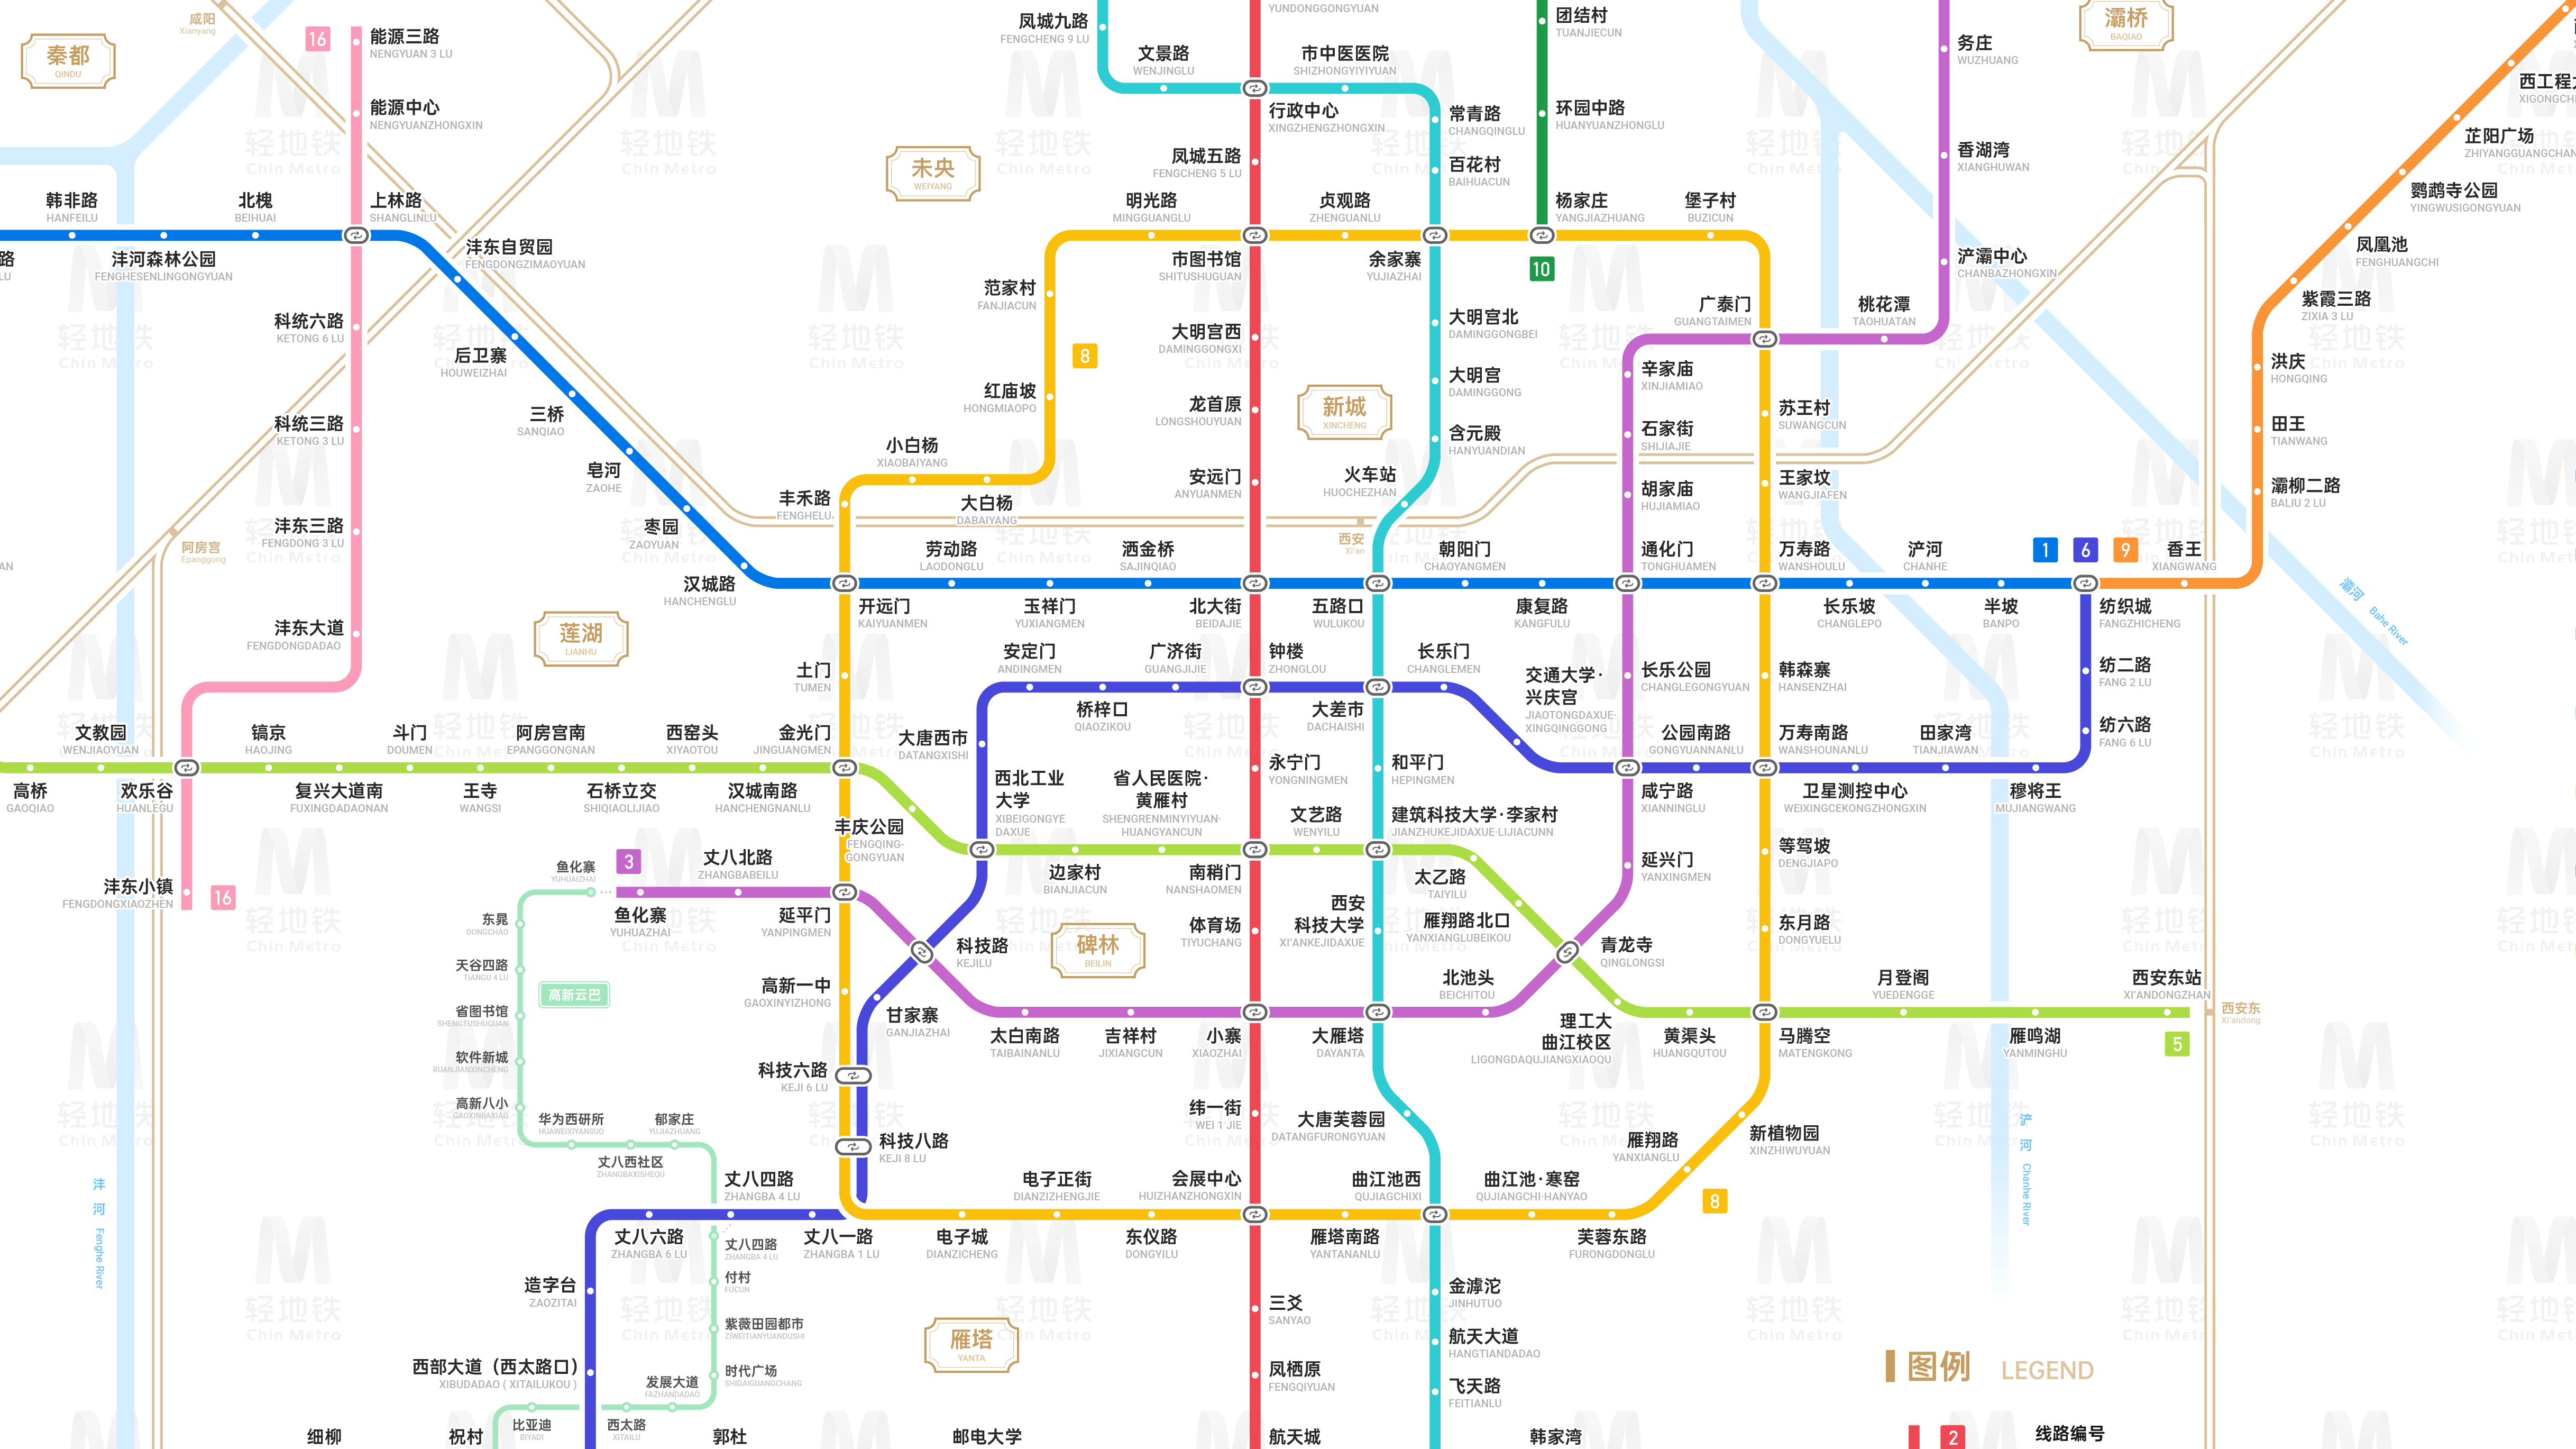 上海地铁17号线线路图_运营时间票价站点_查询下载|地铁图